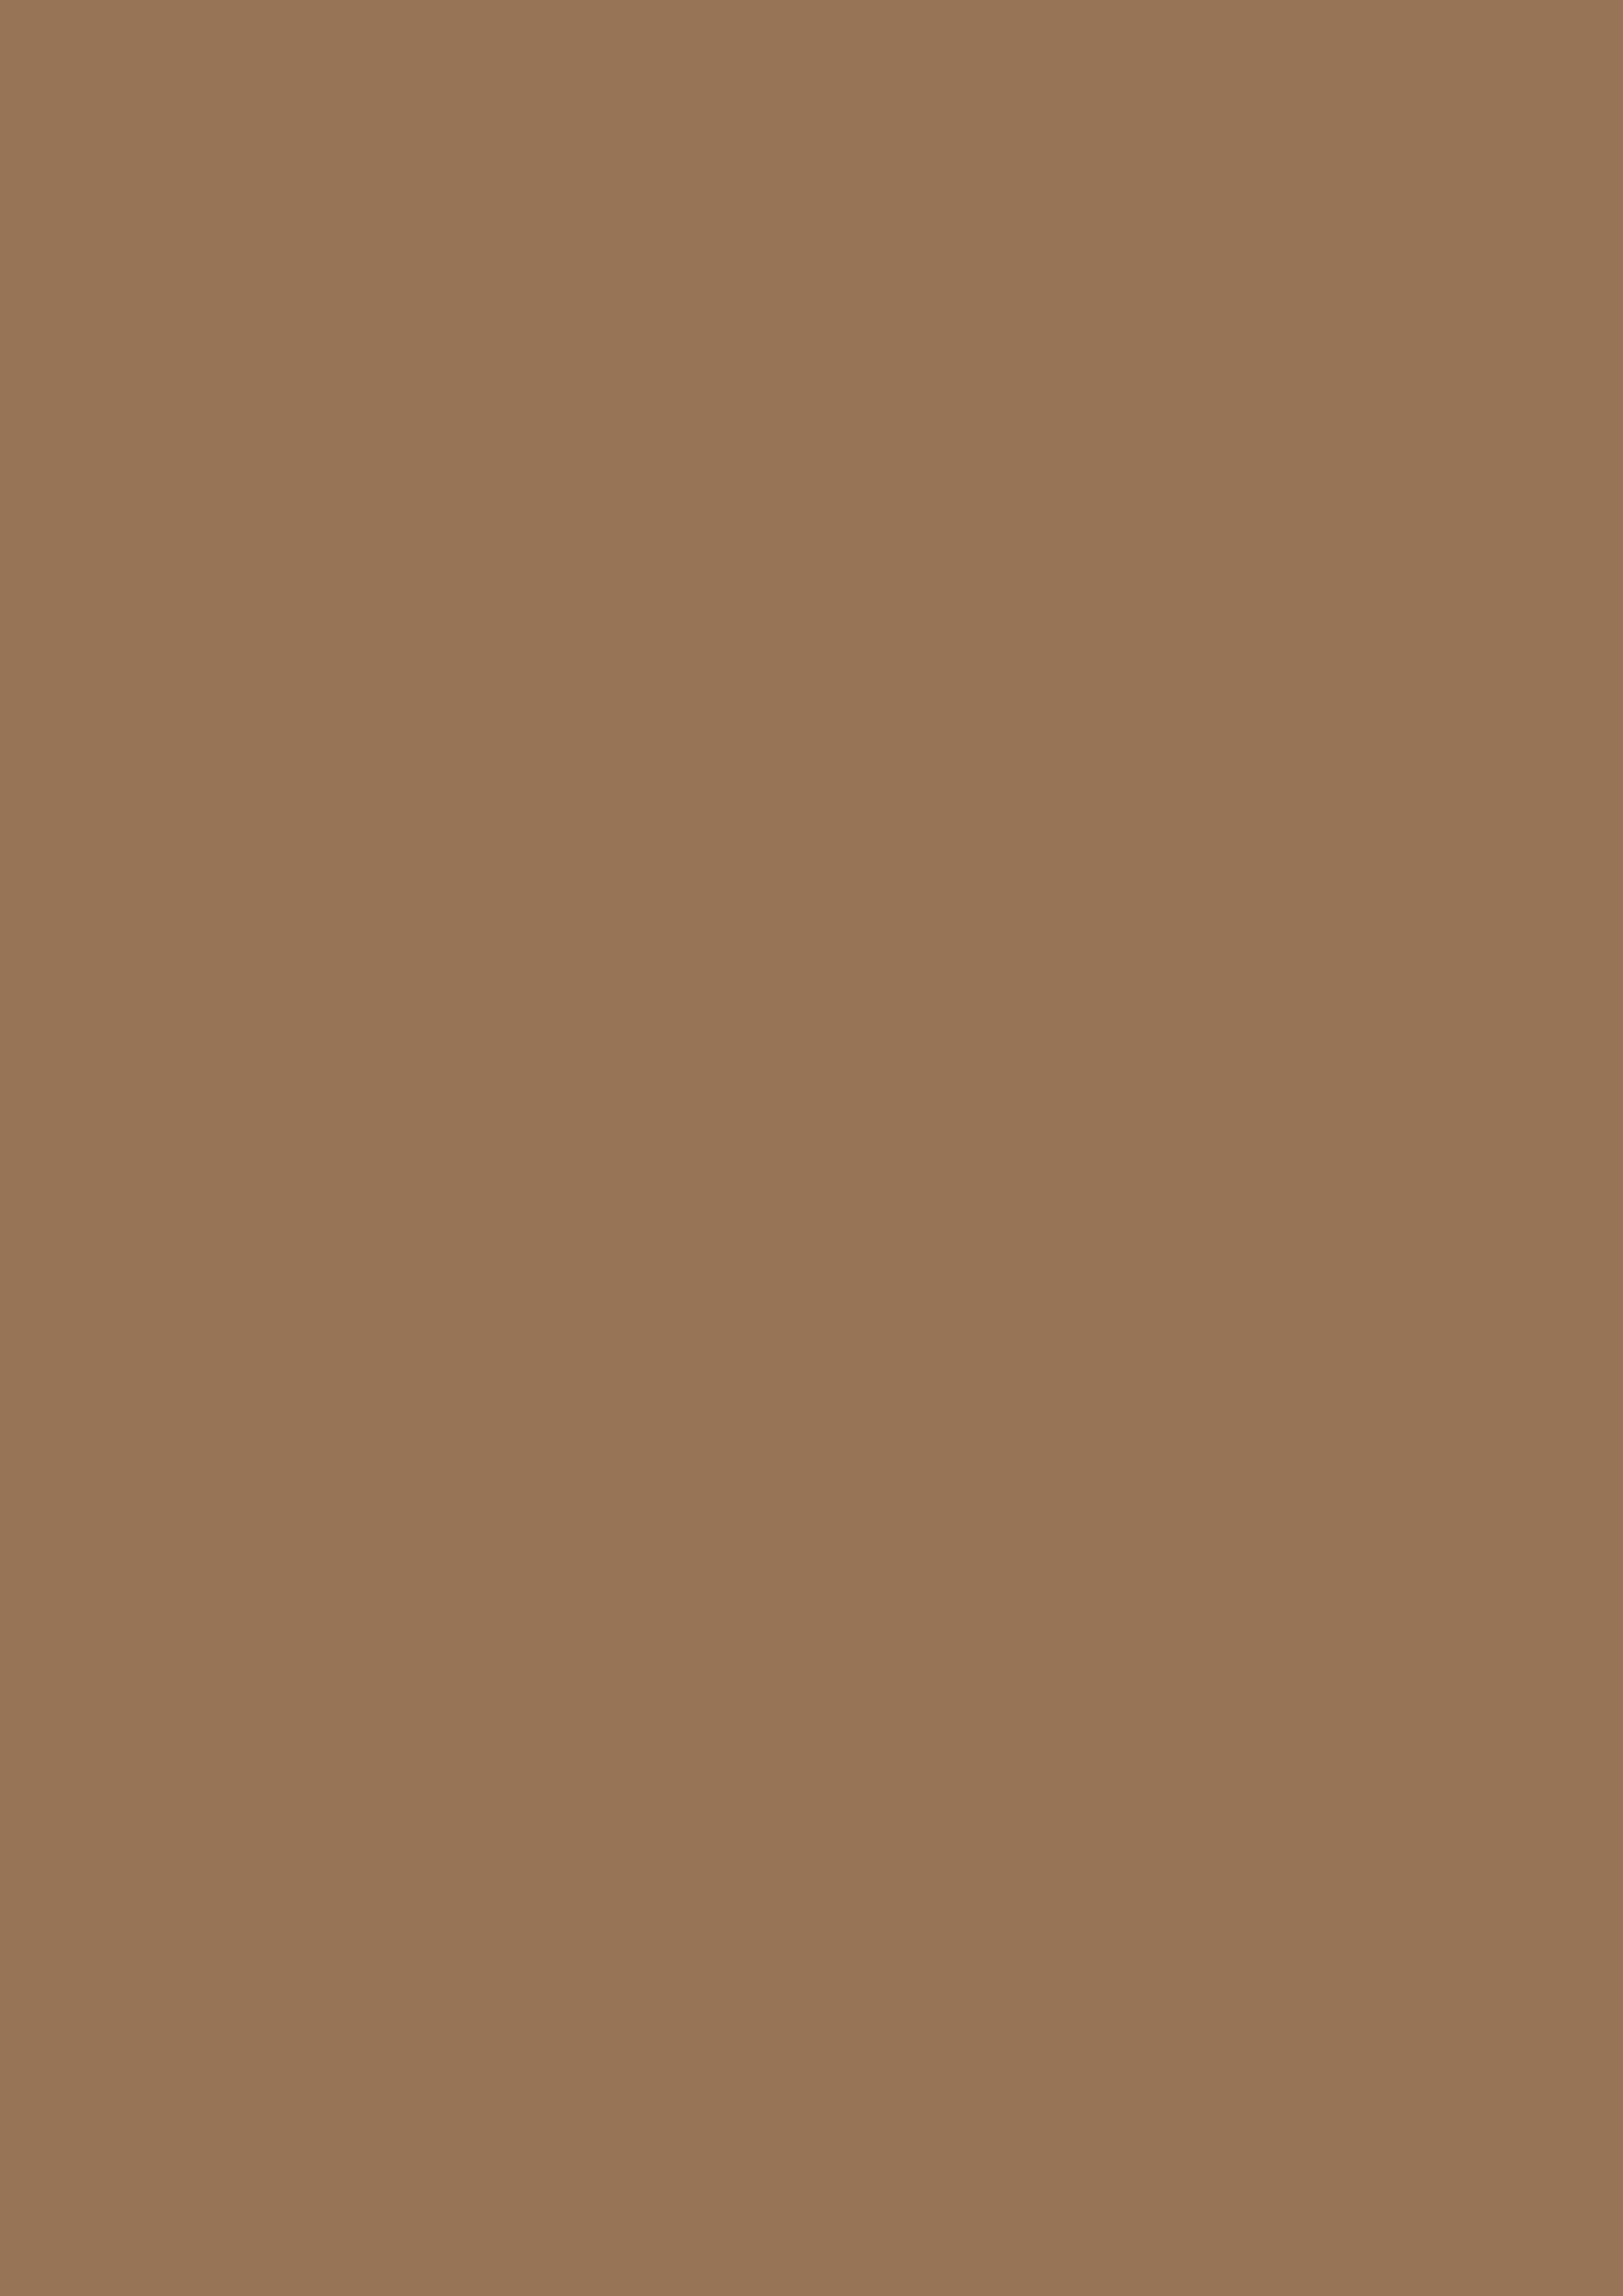 2480x3508 Liver Chestnut Solid Color Background